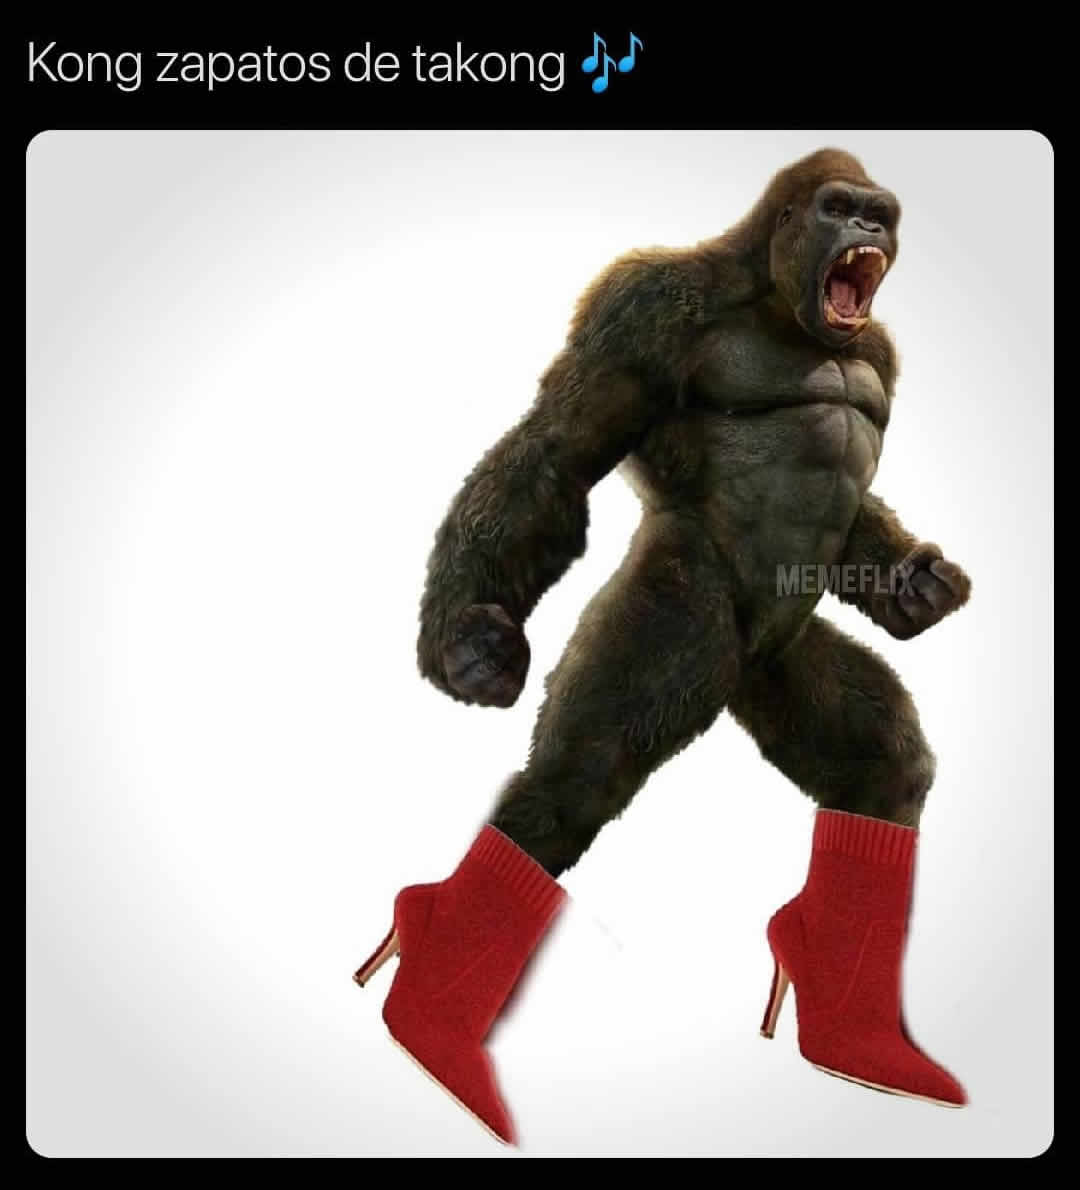 Kong zapatos de takong.